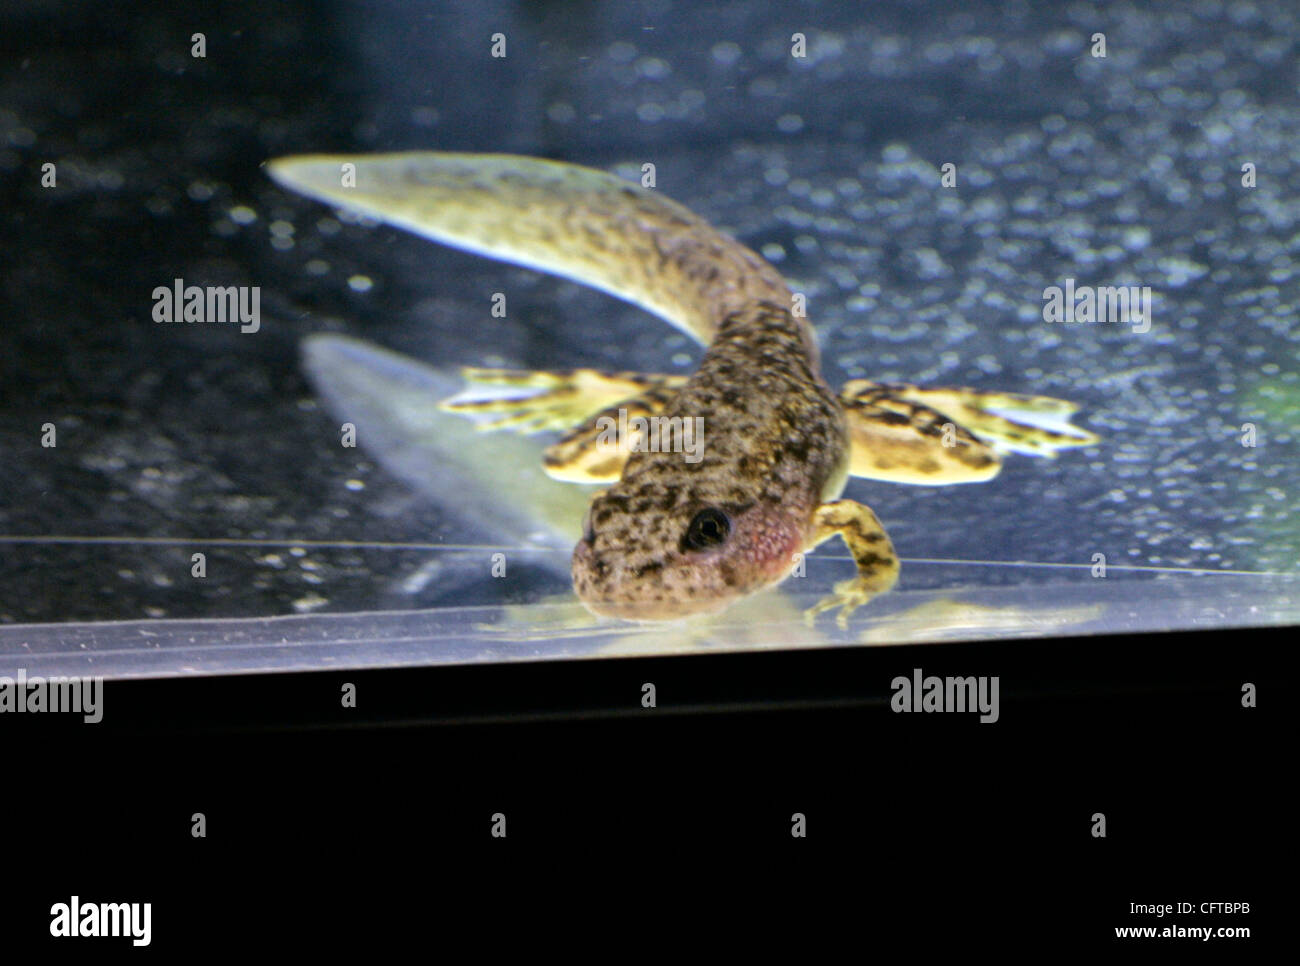 2 gennaio 2007 , San Diego,- Herpetologist JEFF LEMM, che lavora presso il San Diego Zoo Beckman Center presso il Wild Animal Park, con in pericolo giallo Rana zampe di girini e rane che hanno sollevato in laboratorio. Un morphing tadpole appoggiato sul fondo di uno dei serbatoi presso il centro di ricerca Foto Stock